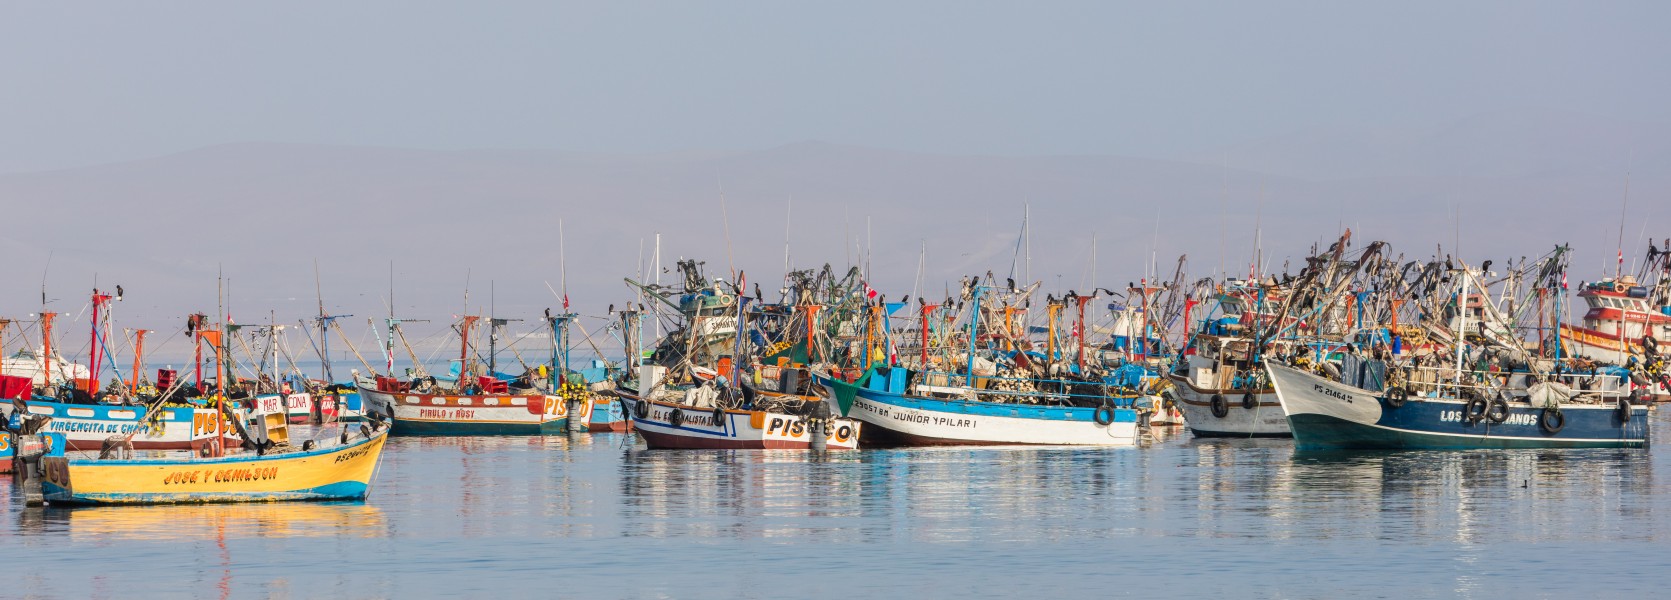 Puerto de Paracas, Perú, 2015-07-29, DD 12